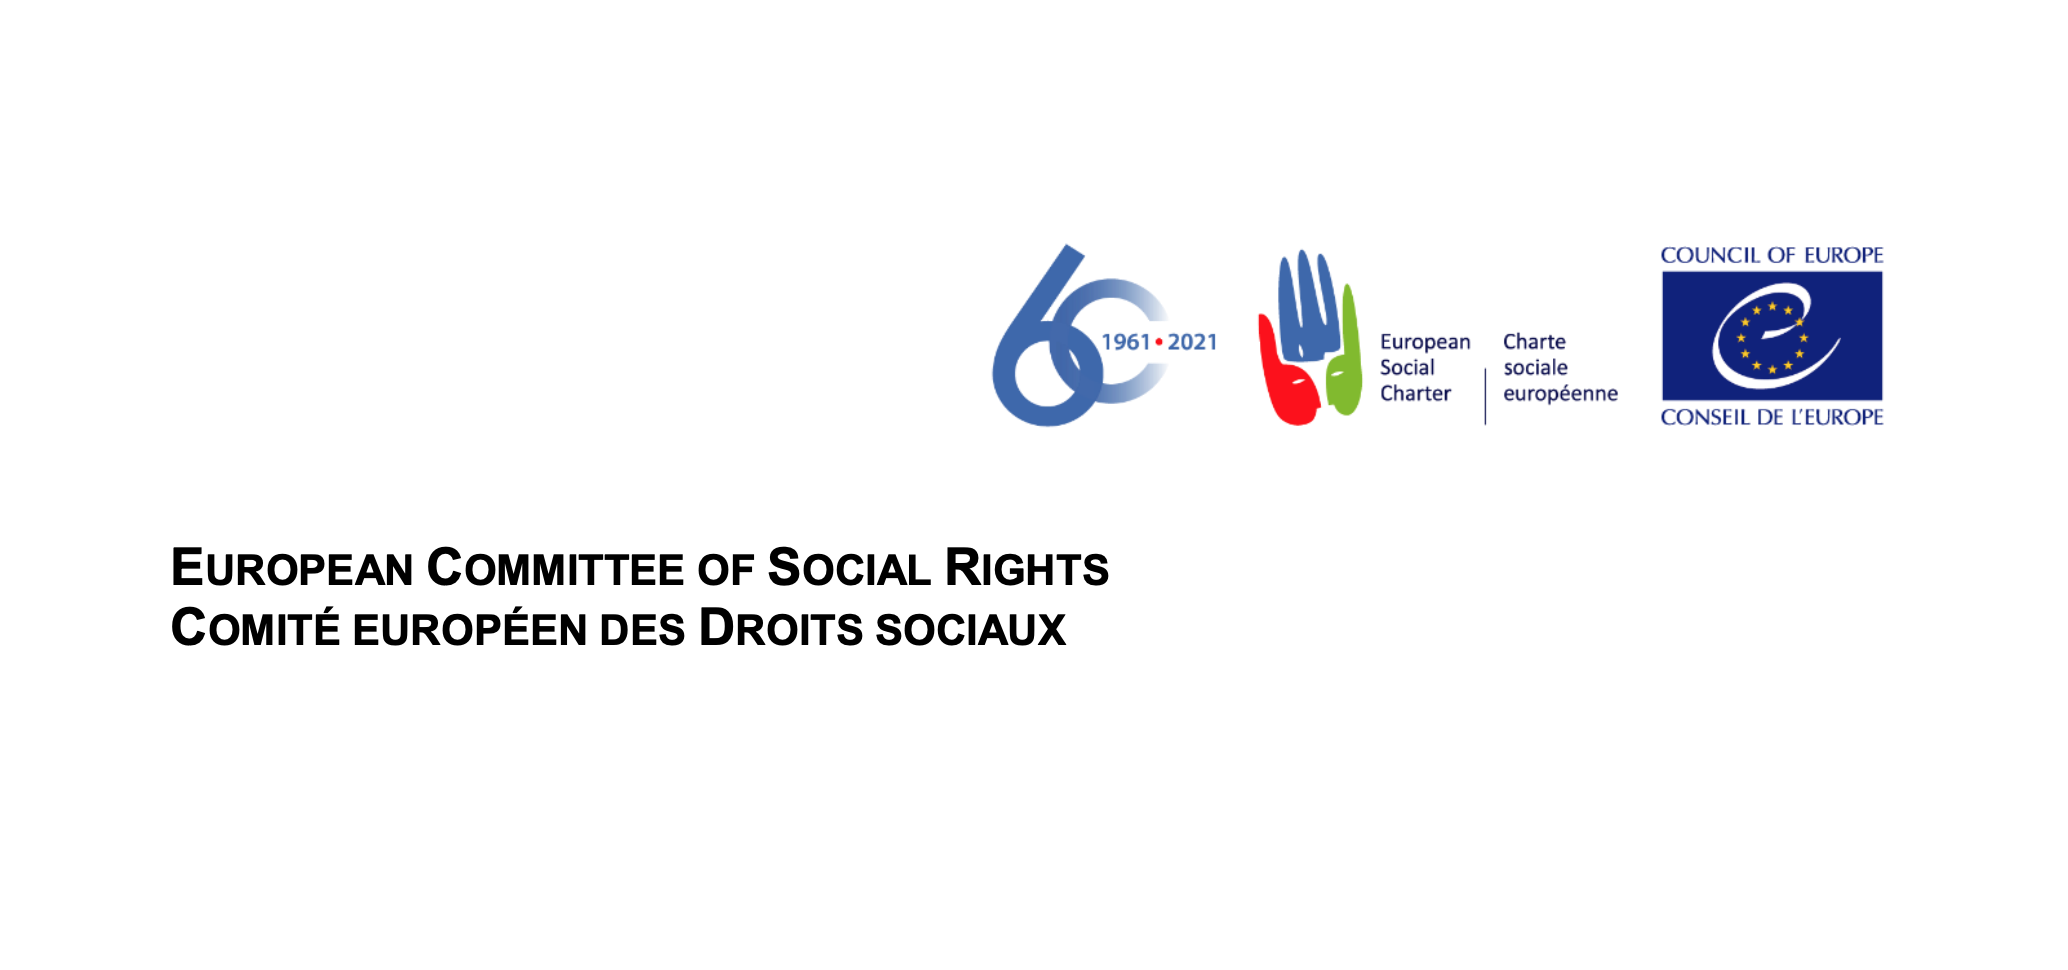 Komitee des Europarats für Soziale Rechte veröffentlicht Erklärung zu Covid-19 und sozialen Rechten